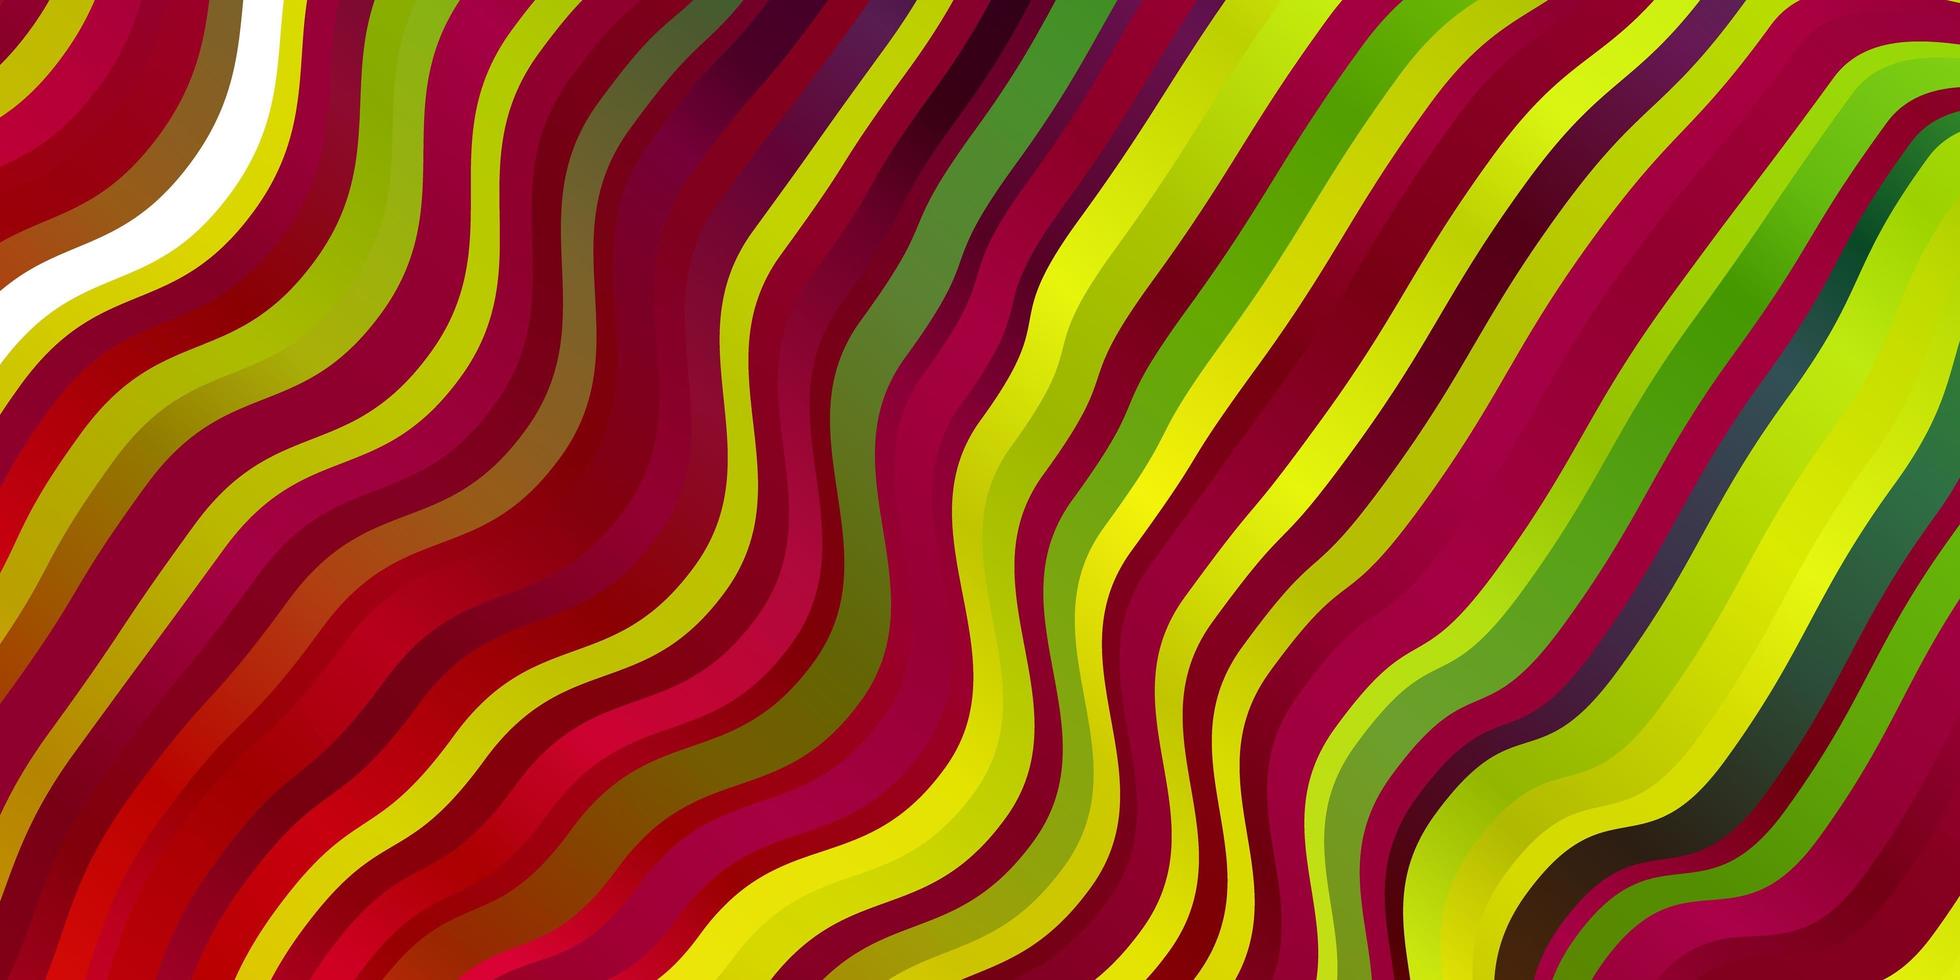 luz padrão multicolorido de vetor com linhas curvas.